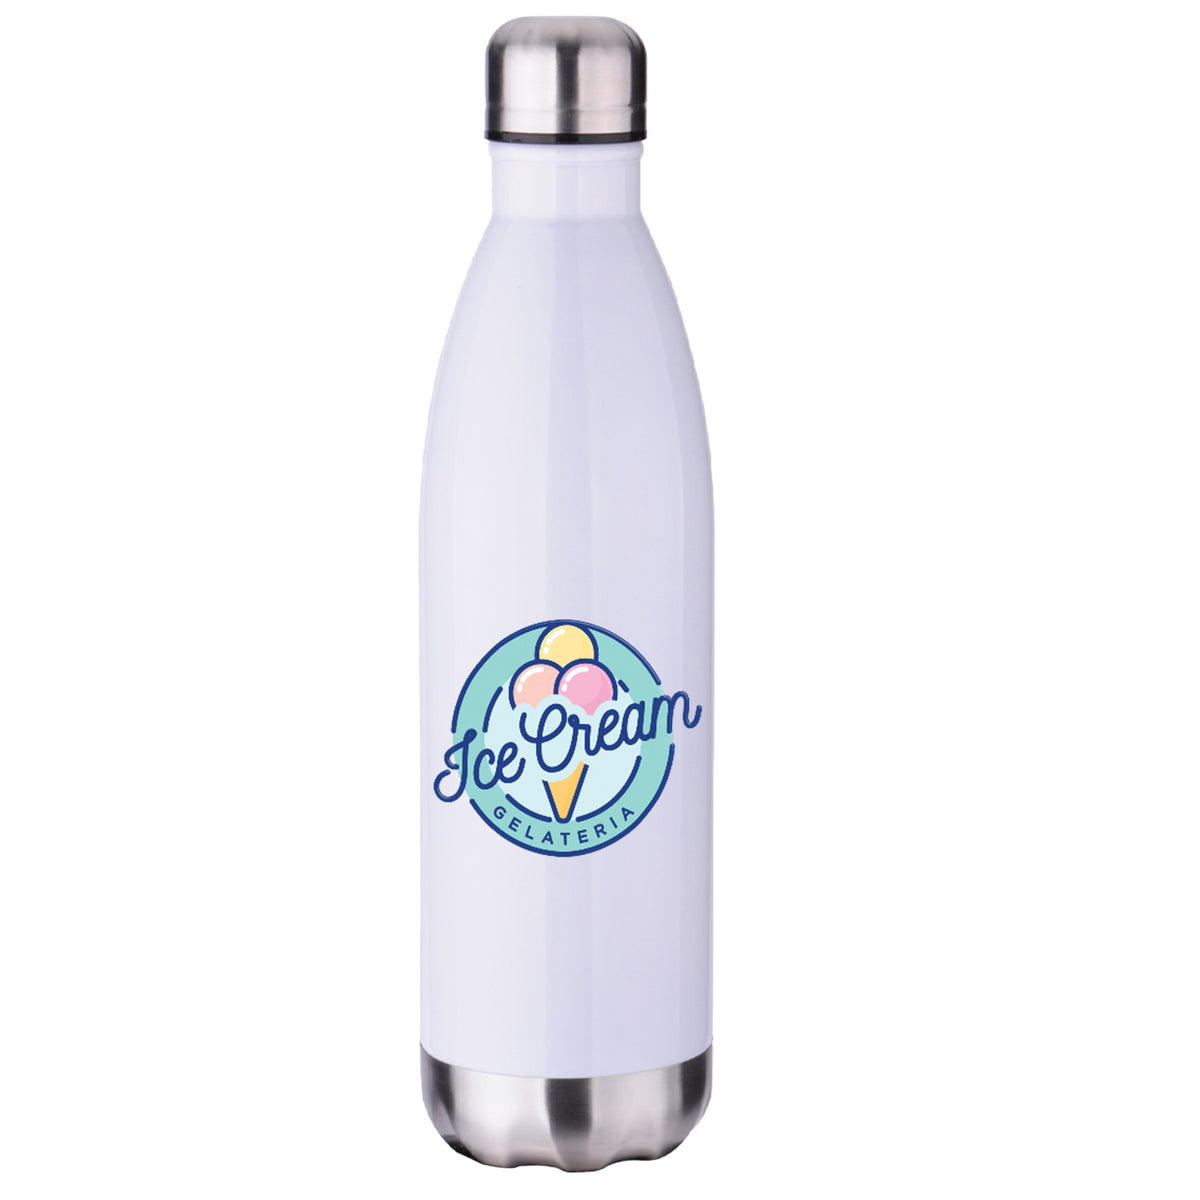 Water Bottle - 26 oz. | Silver